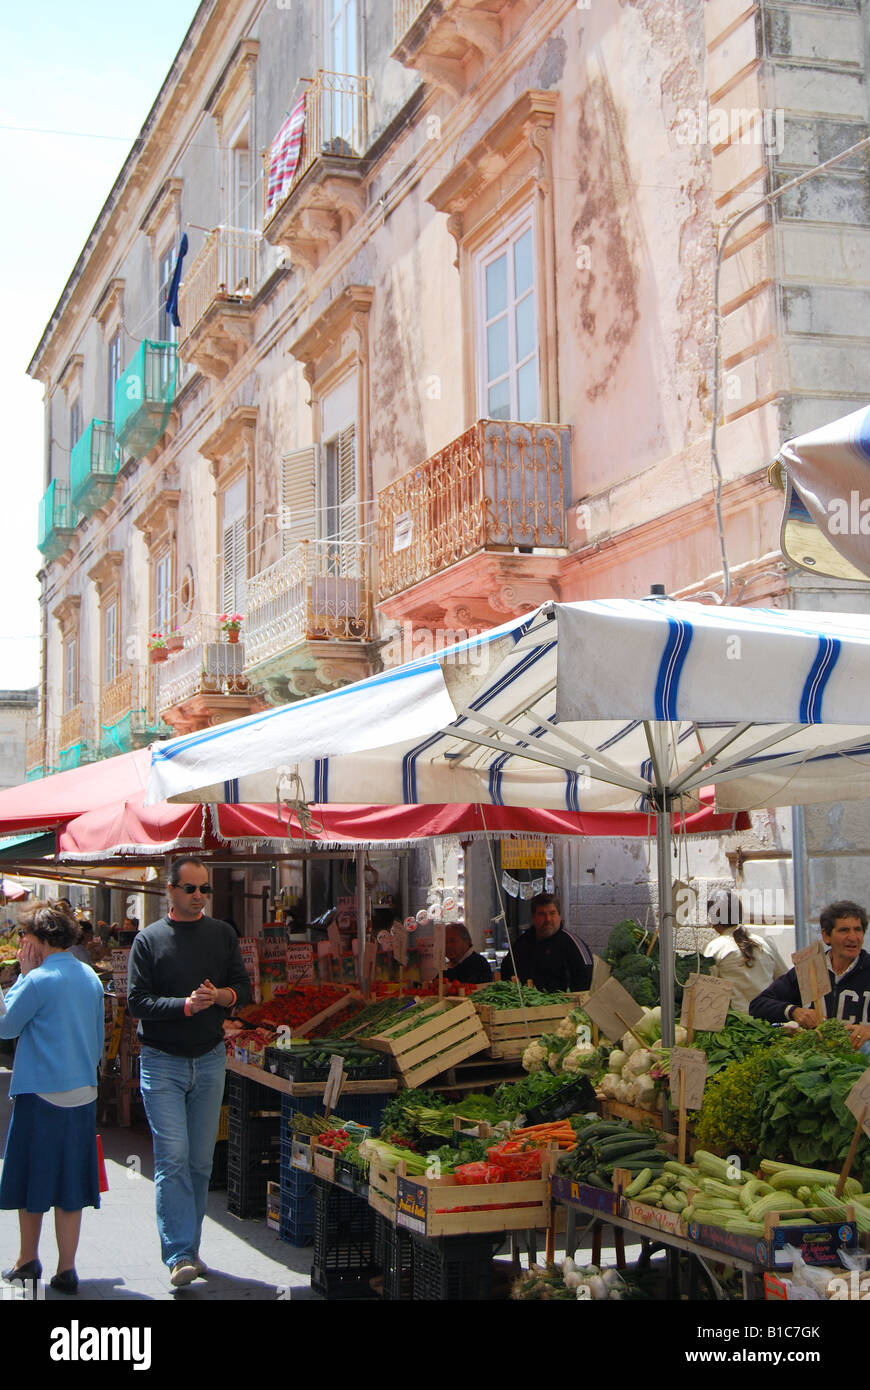 Market stalls, Market of Ortigia, Isola di Ortigia, Siracusa, Sicily, Italy Stock Photo